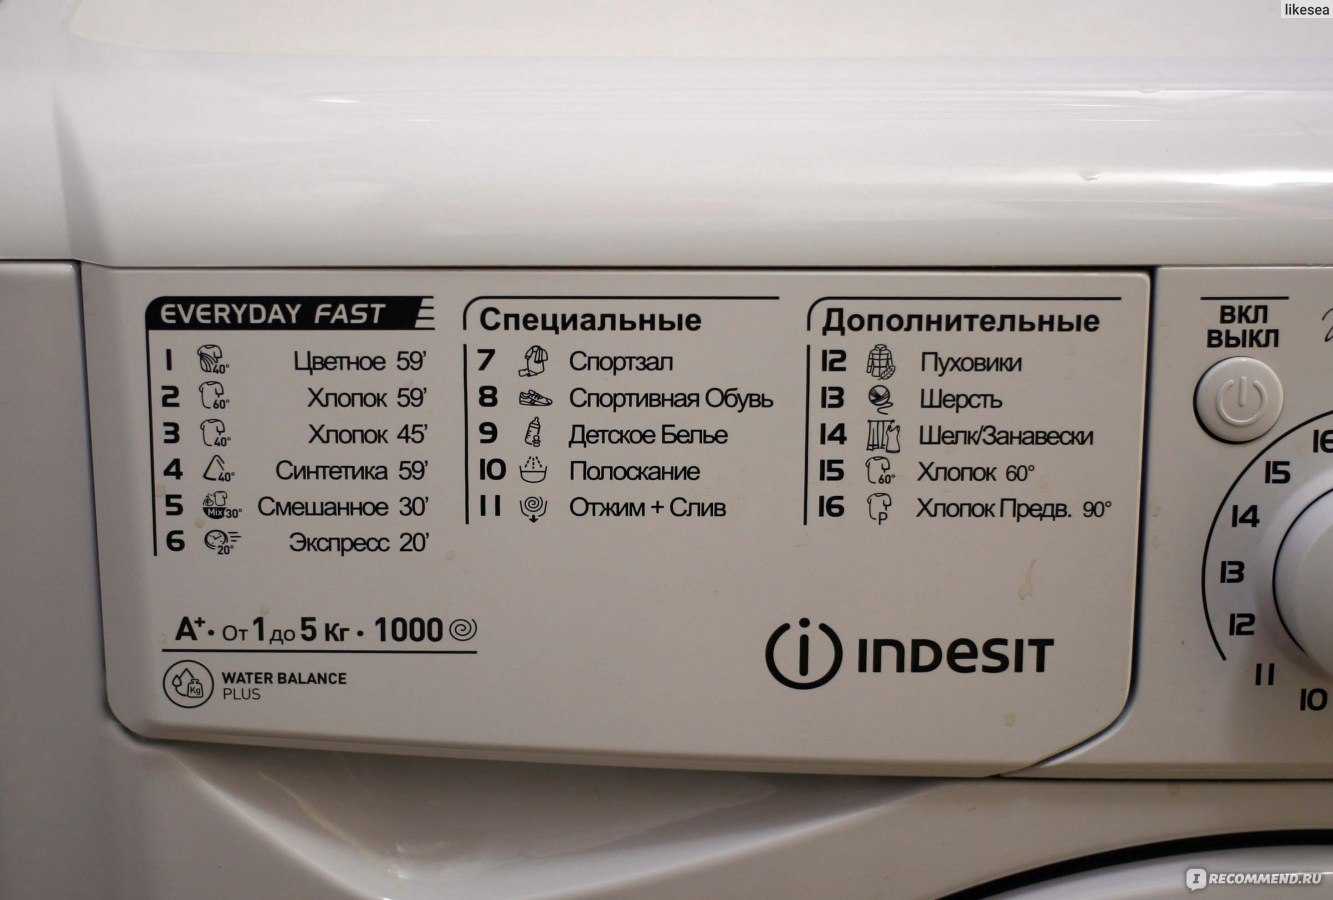 Сколько весит стиральная машина-автомат?